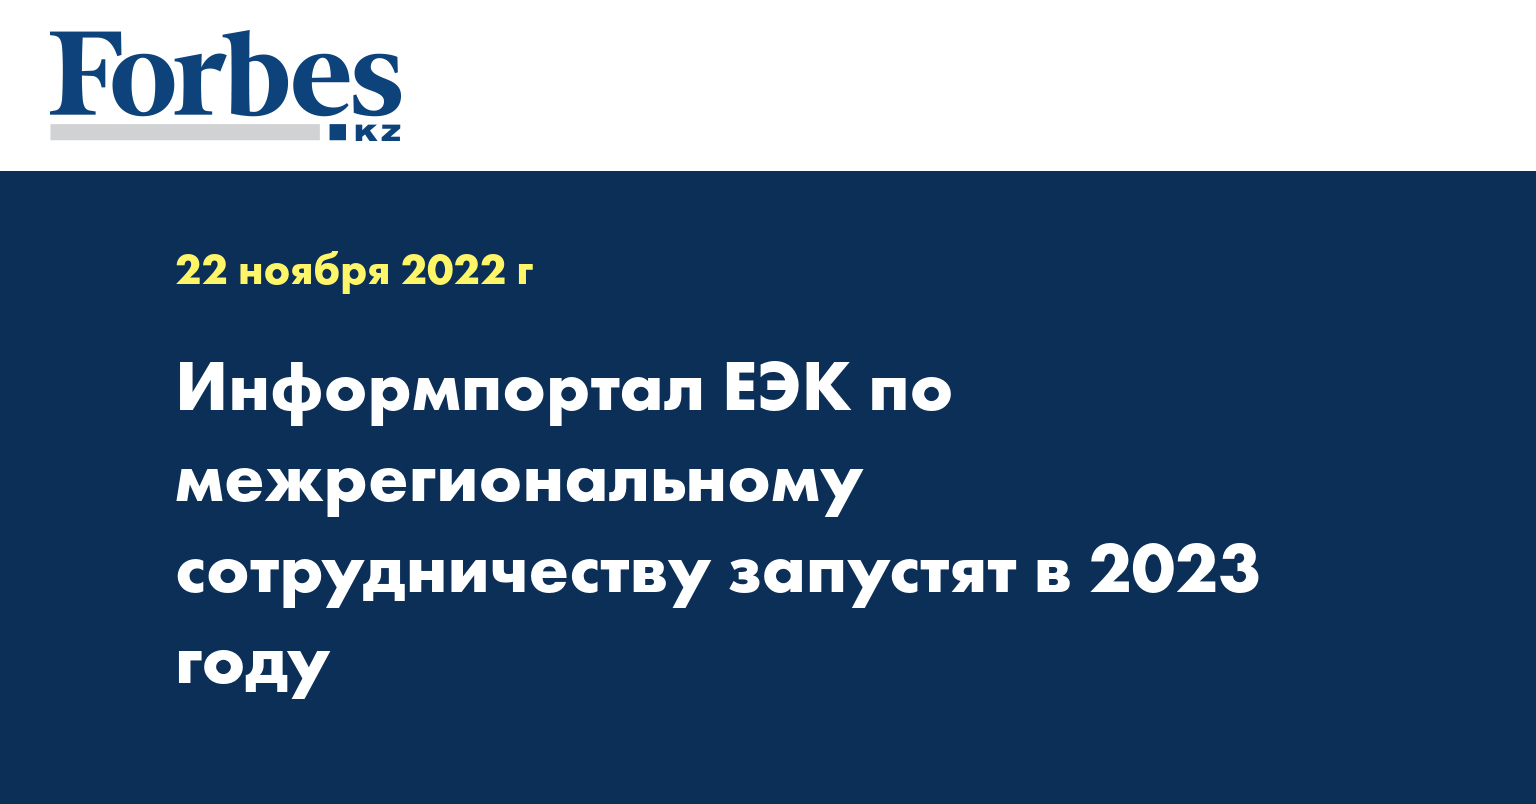 Информпортал ЕЭК по межрегиональному сотрудничеству запустят в 2023 году